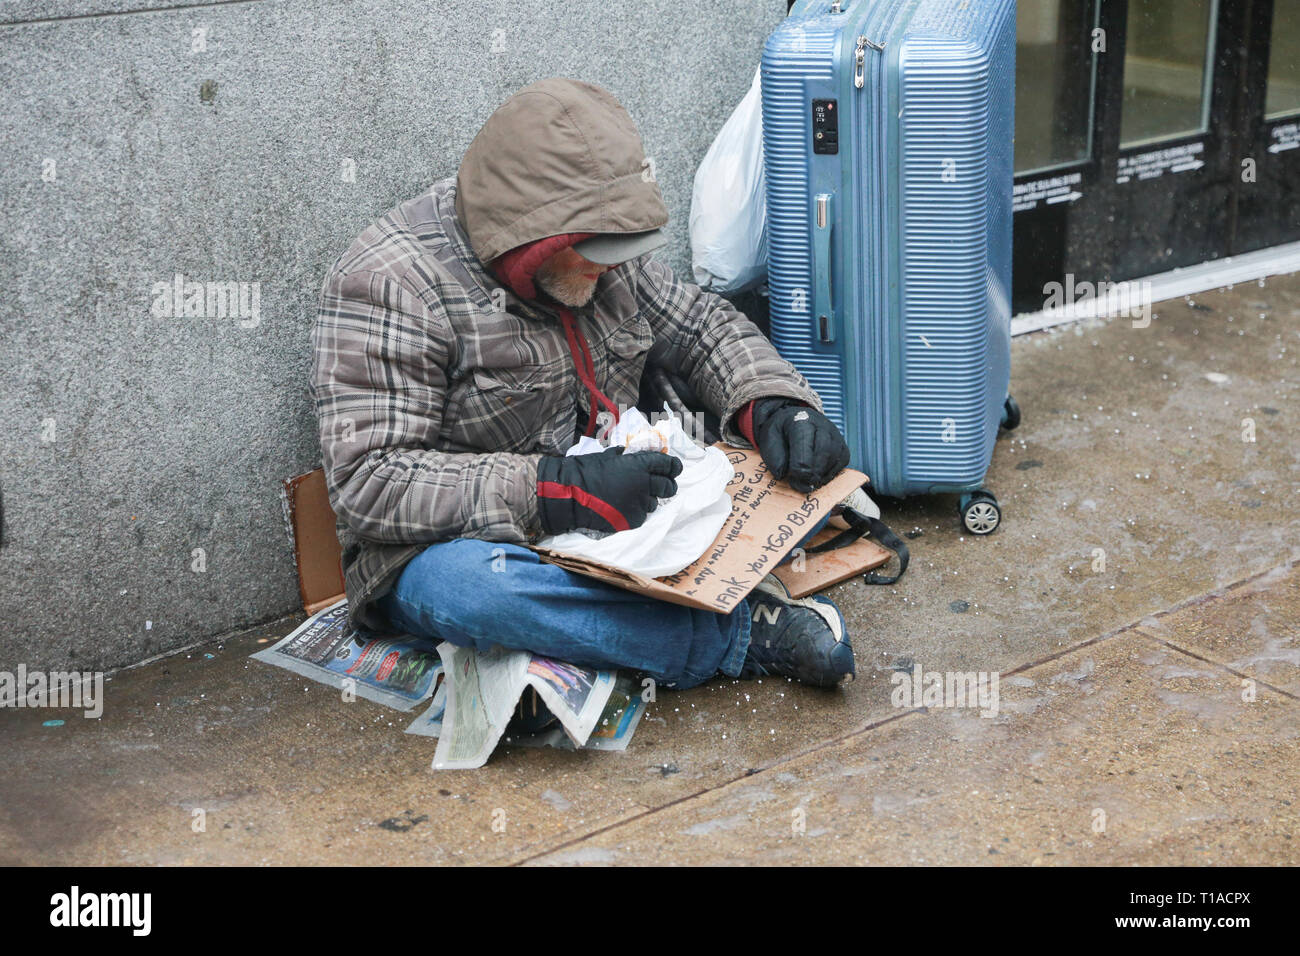 New York, NY - 12 Febbraio 2019: un senzatetto è mangiare cibo, mentre tenendo un cartello per aiutare, cibo e denaro. Midtown Manhattan. - Immagine Foto Stock